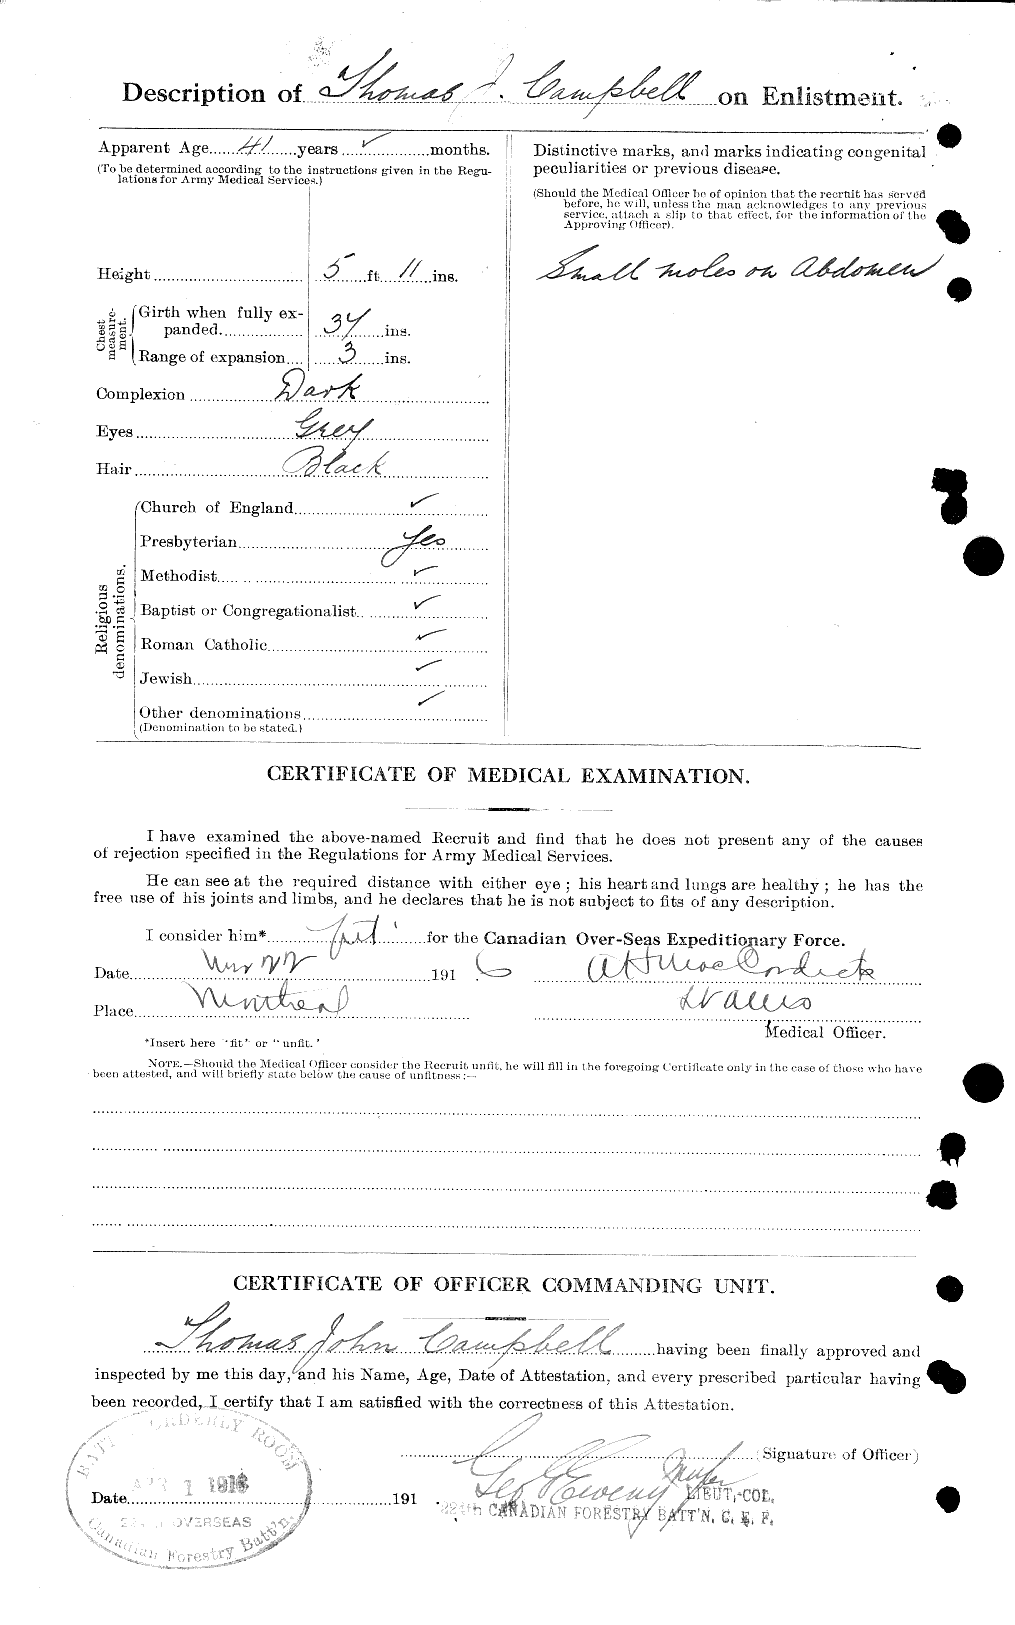 Dossiers du Personnel de la Première Guerre mondiale - CEC 004060b